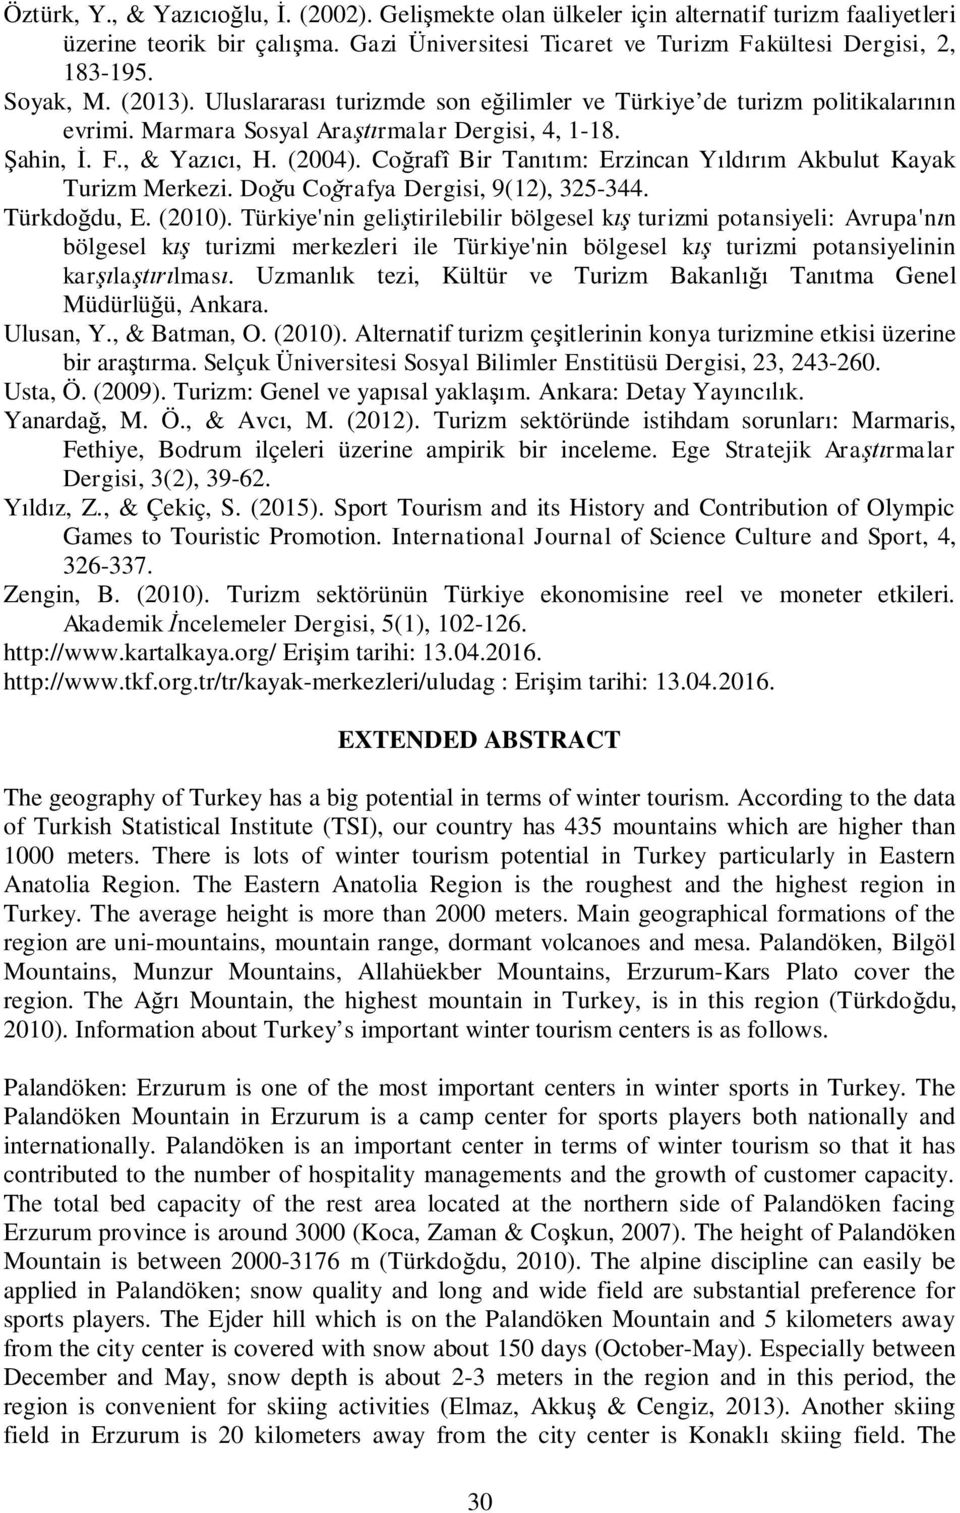 Co rafî Bir Tan m: Erzincan Y ld m Akbulut Kayak Turizm Merkezi. Do u Co rafya Dergisi, 9(12), 325-344. Türkdo du, E. (2010).